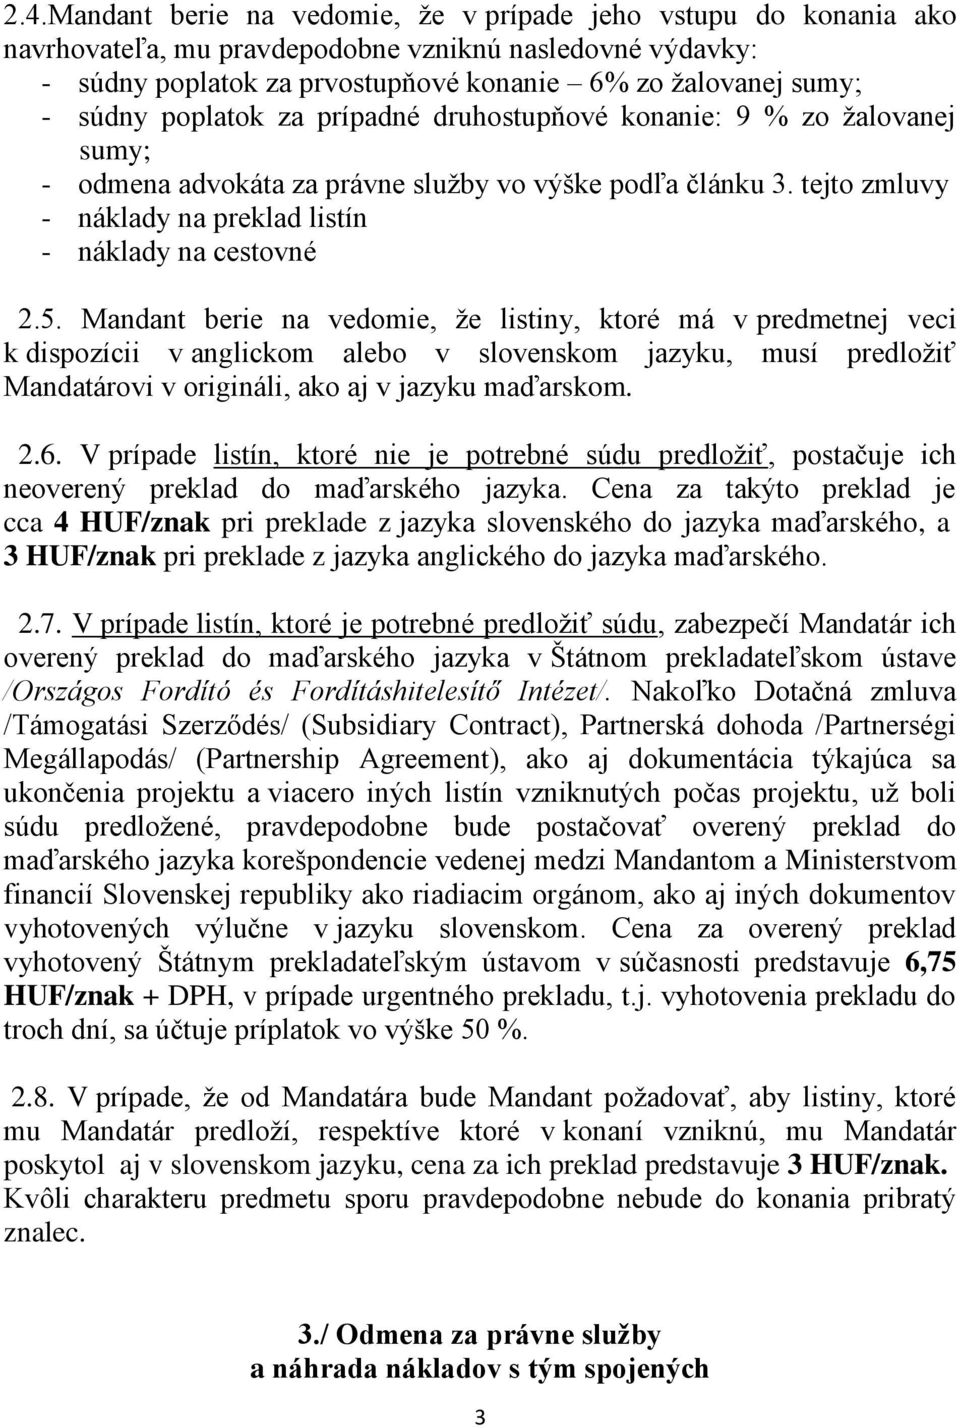 Mandant berie na vedomie, že listiny, ktoré má v predmetnej veci k dispozícii v anglickom alebo v slovenskom jazyku, musí predložiť Mandatárovi v origináli, ako aj v jazyku maďarskom. 2.6.